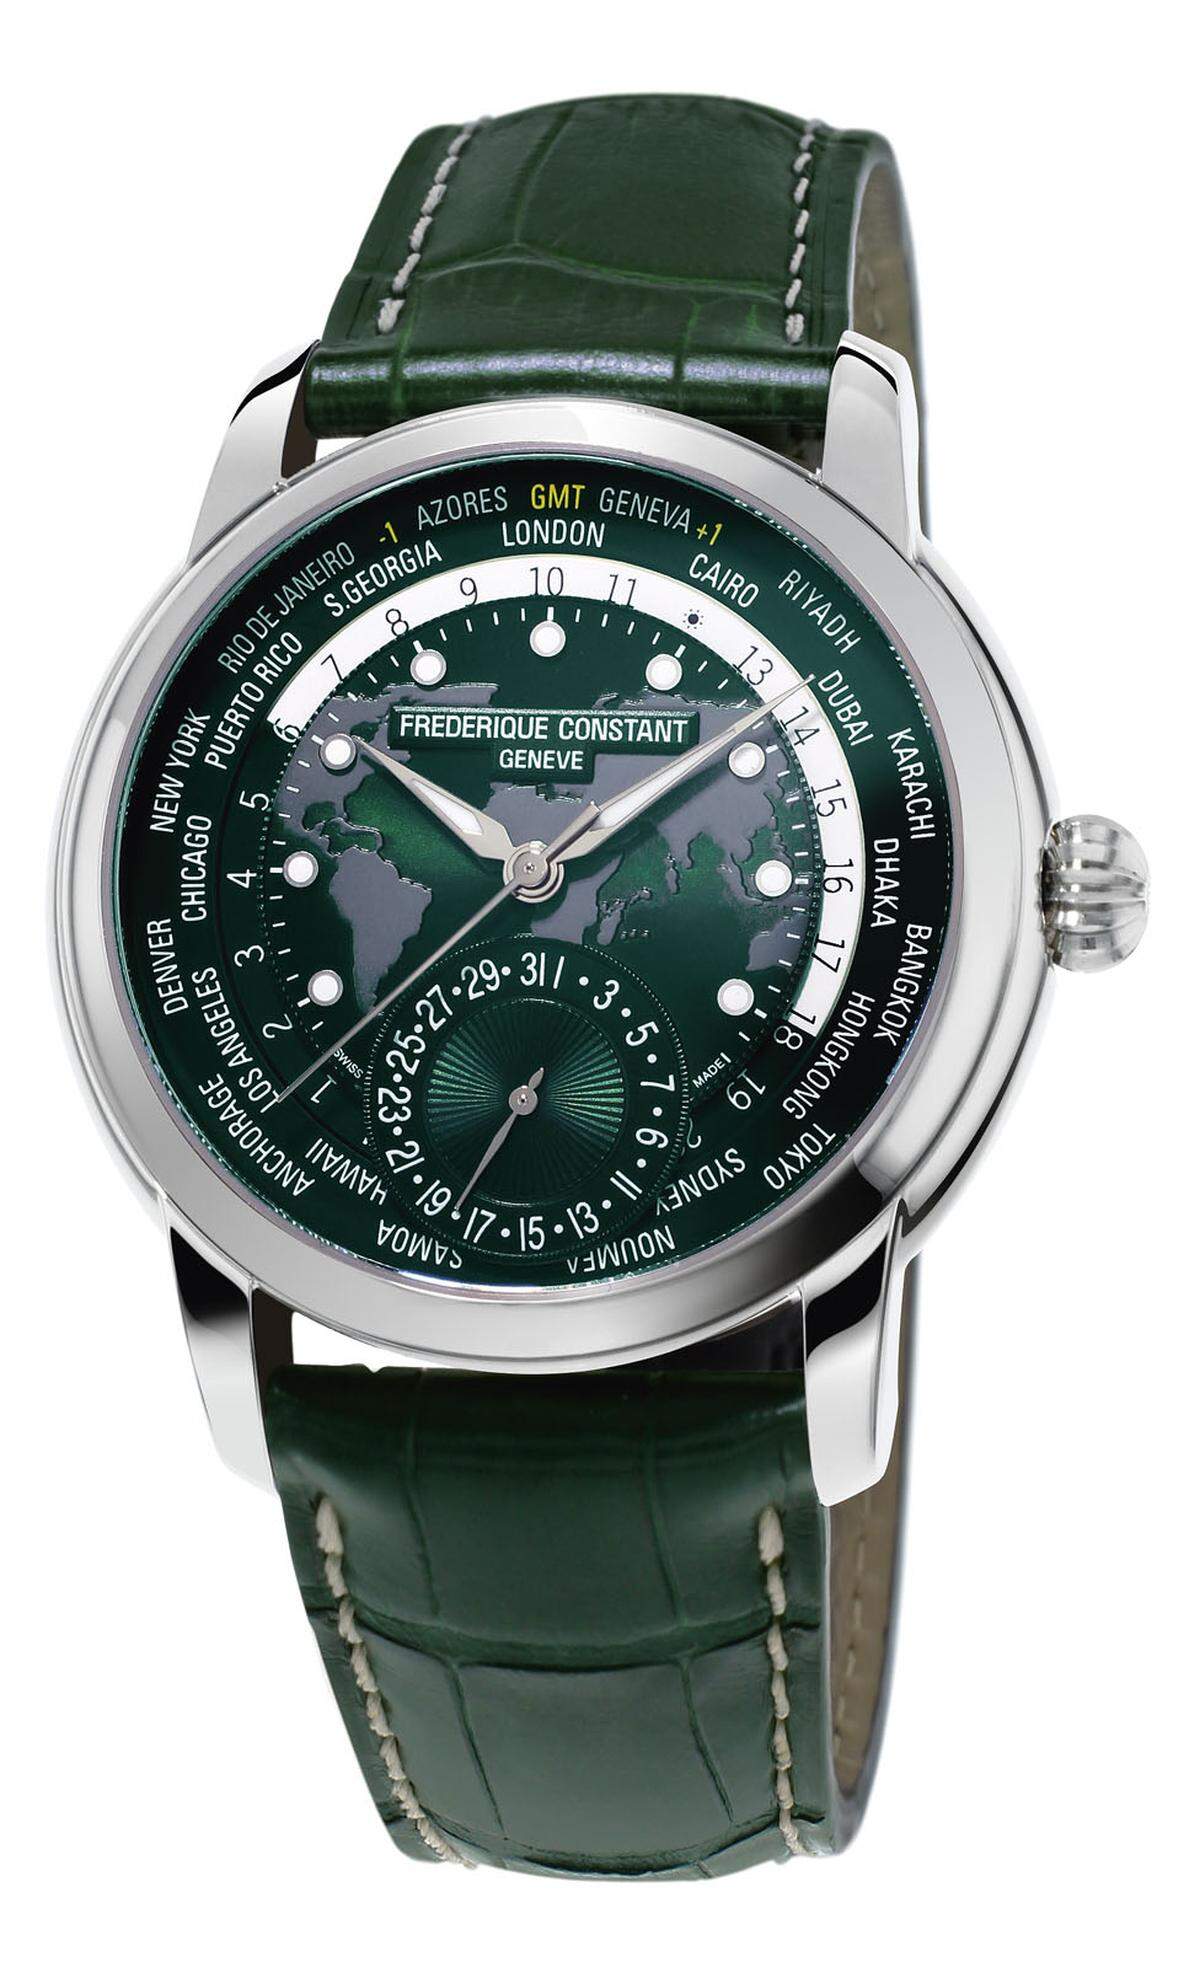 Frédéroqie Constant, "Classic Manufacture Worldtimer": Der Schweizer Uhrenhersteller erweitert seine Kollektion "Manufacture" um eine Weltzeituhr in einem neuen grünen Farbmuster.